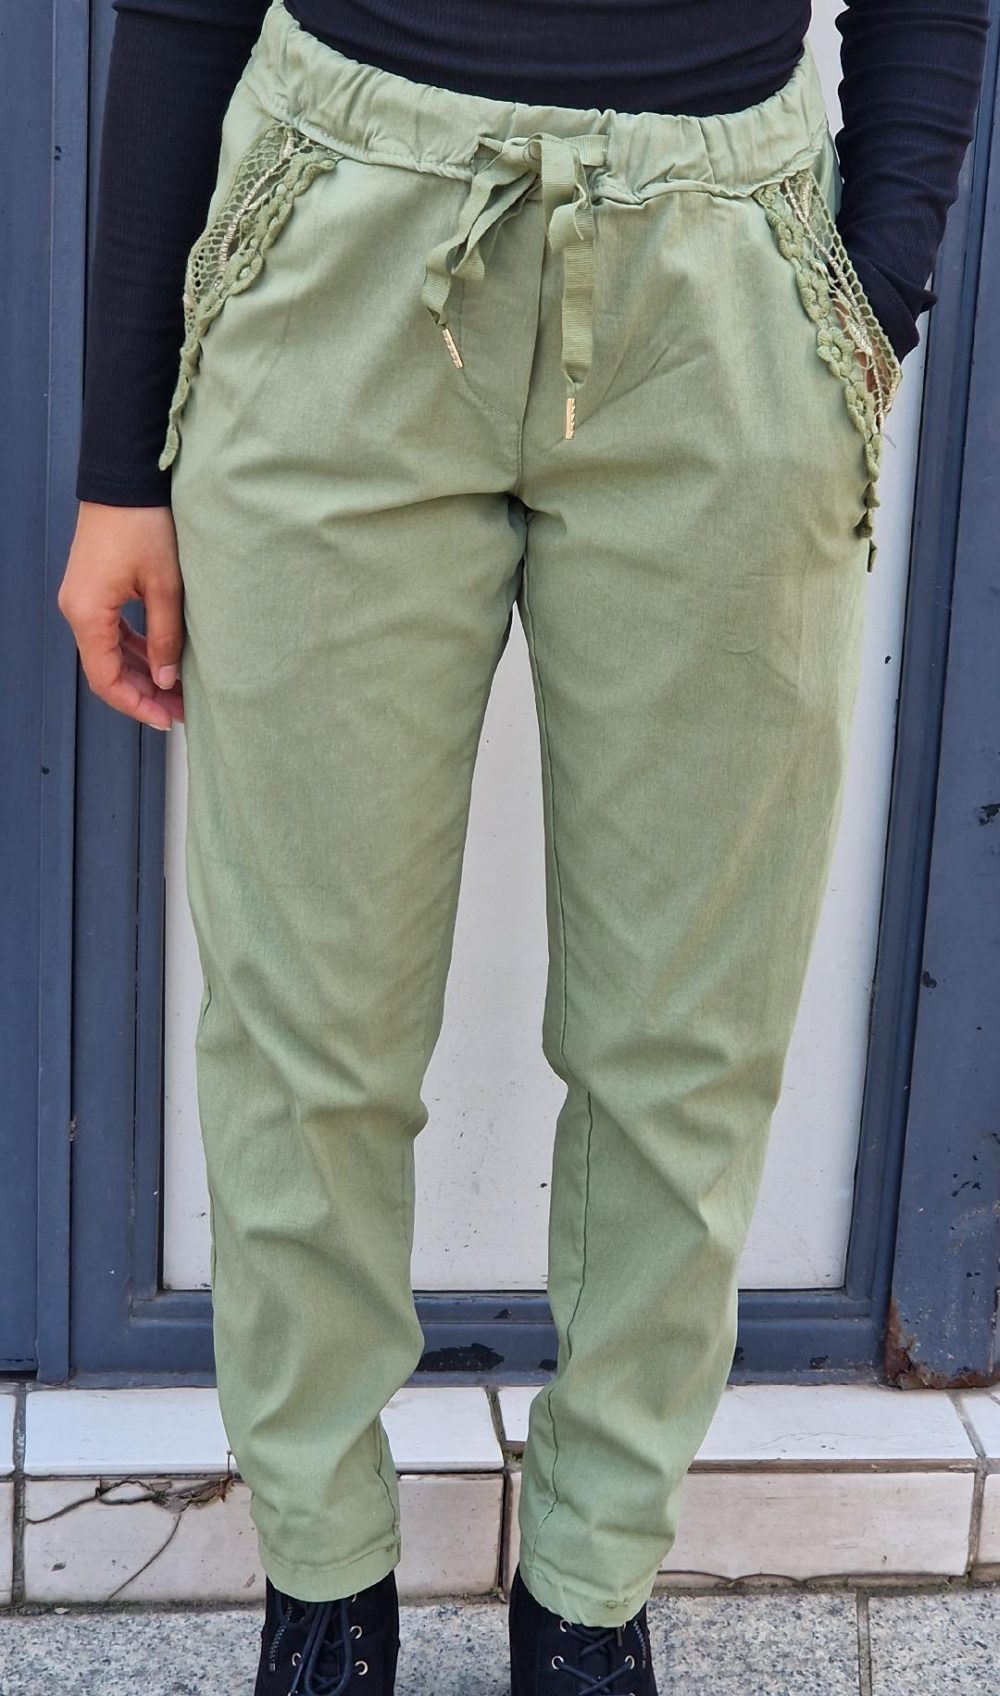 Pantalon de couleur vert. Broderie à fleurs sur les deux poches avant du pantalon. Possède des poches arrières également.